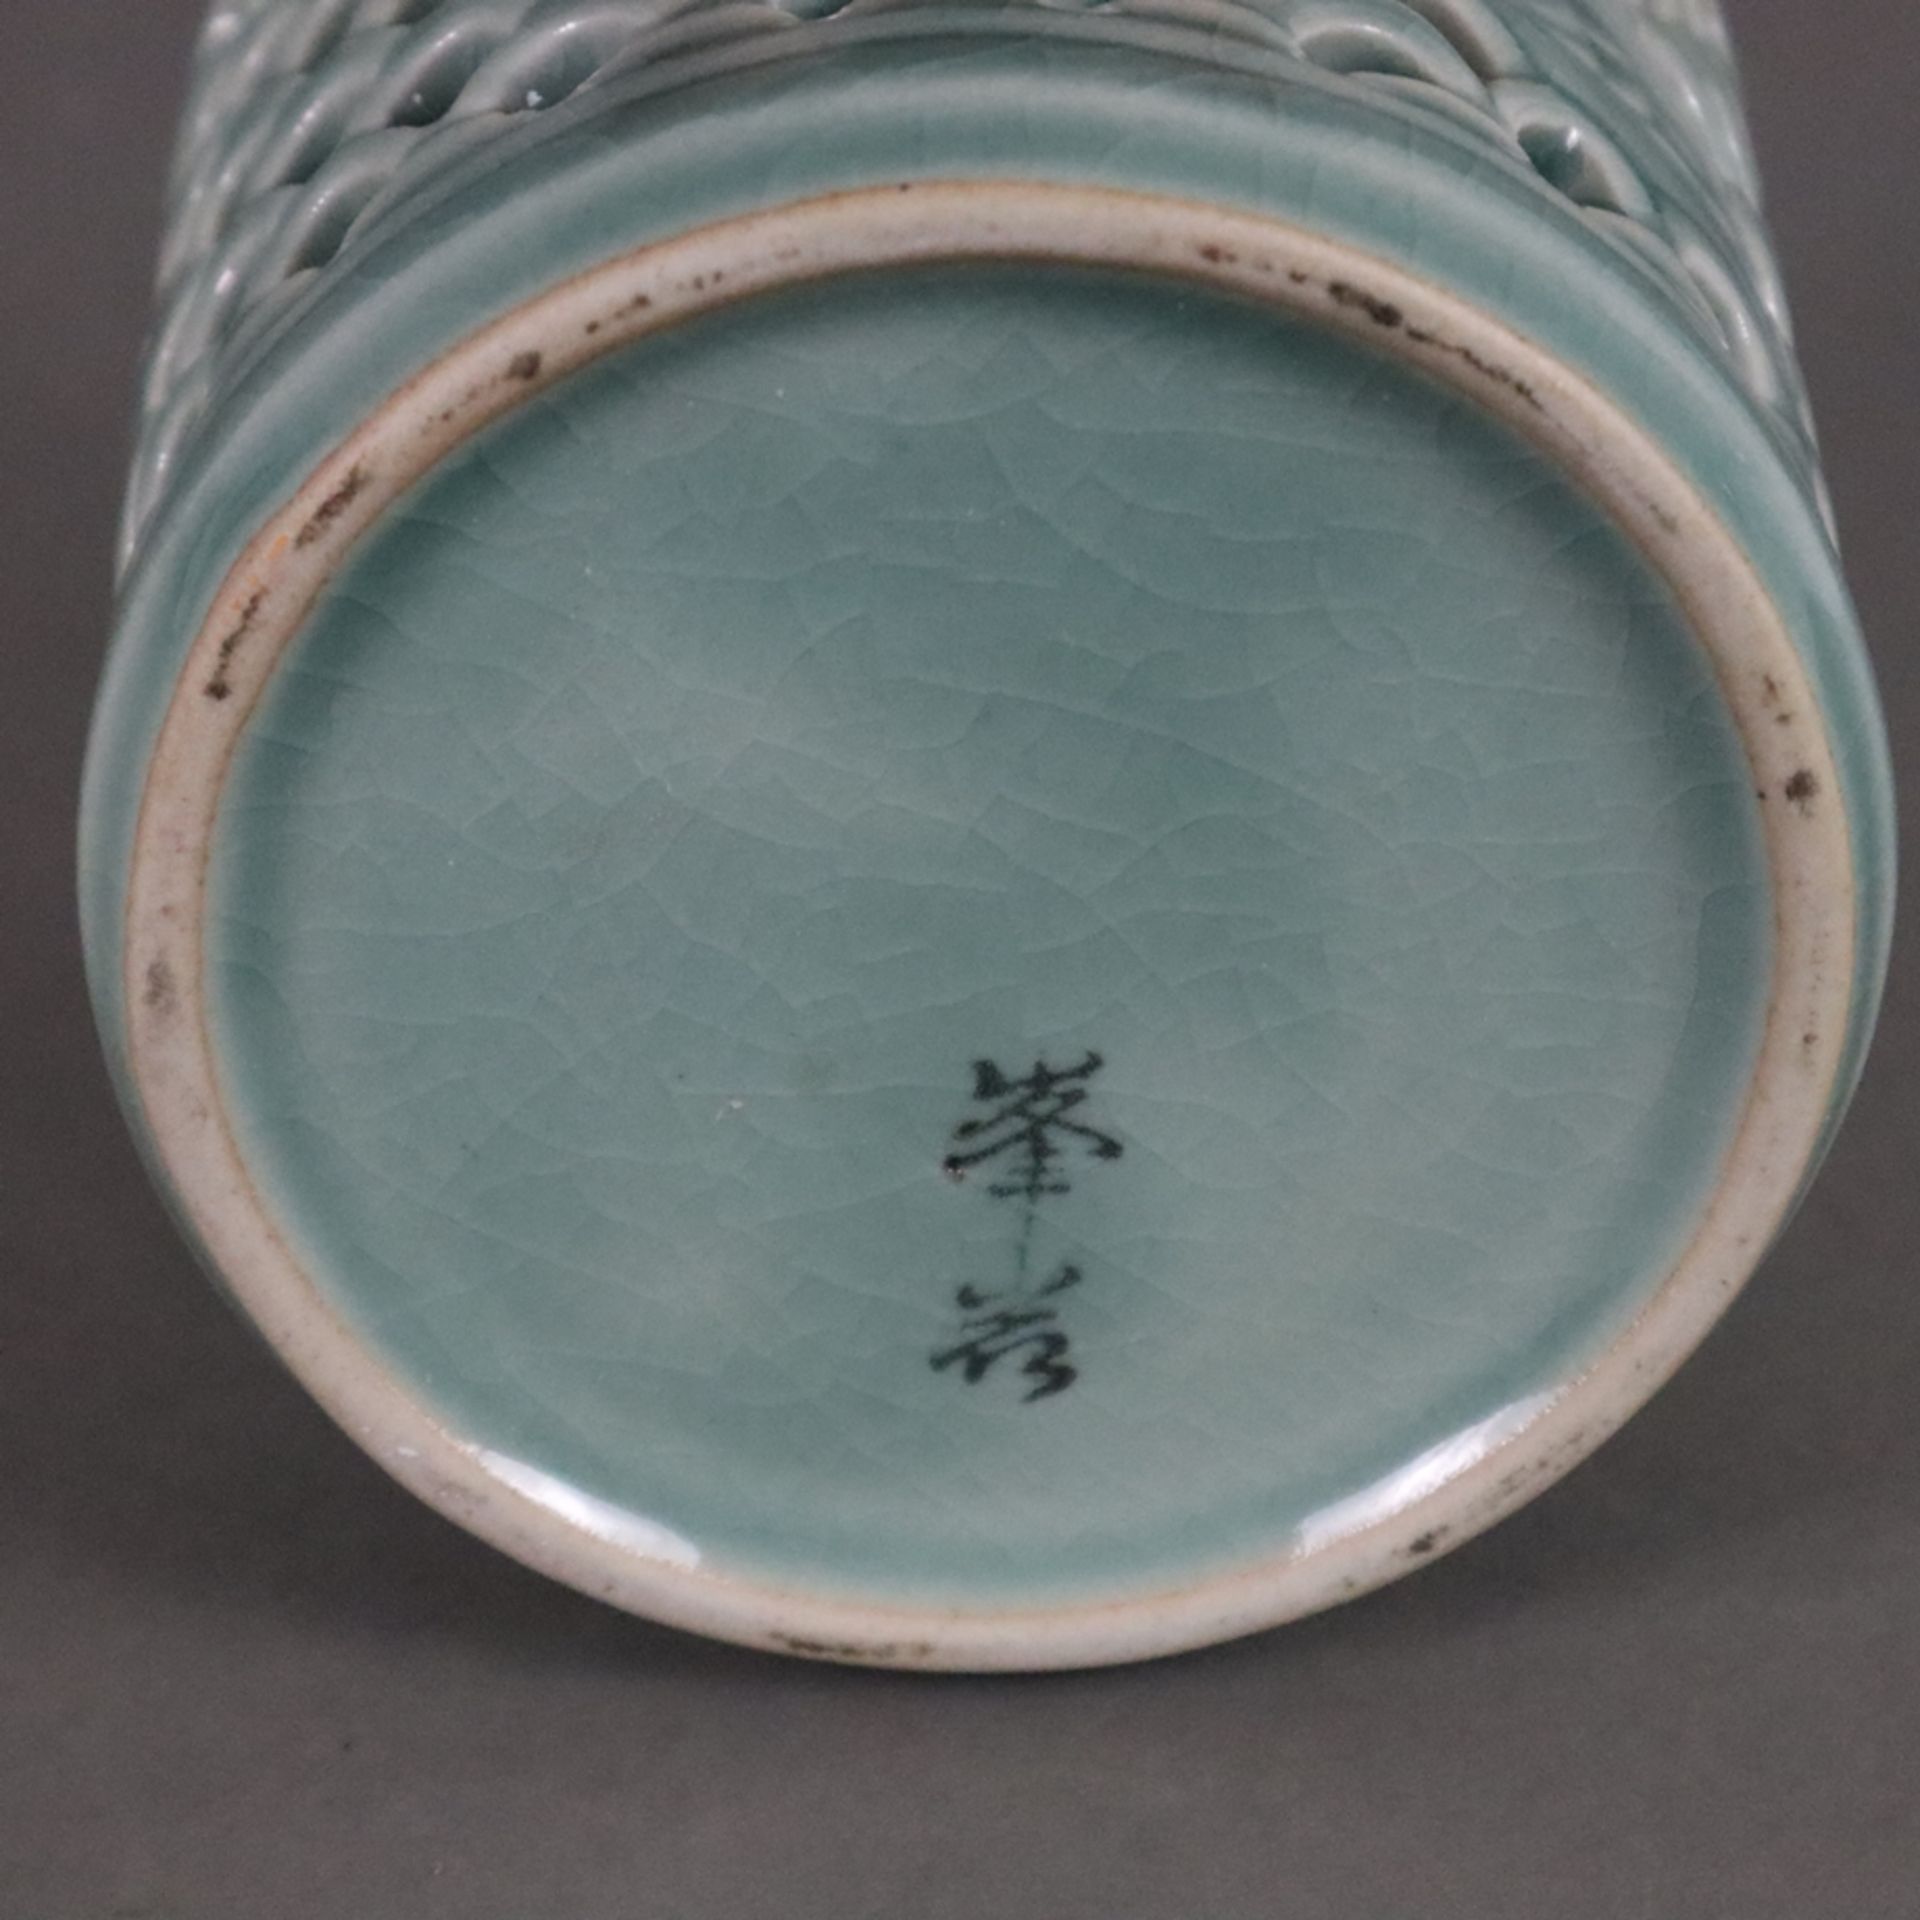 Pinselbecher - China, 20. Jh., Keramik mit bläulicher Glasur, zylindrische Wandung umlaufend mit We - Bild 6 aus 6